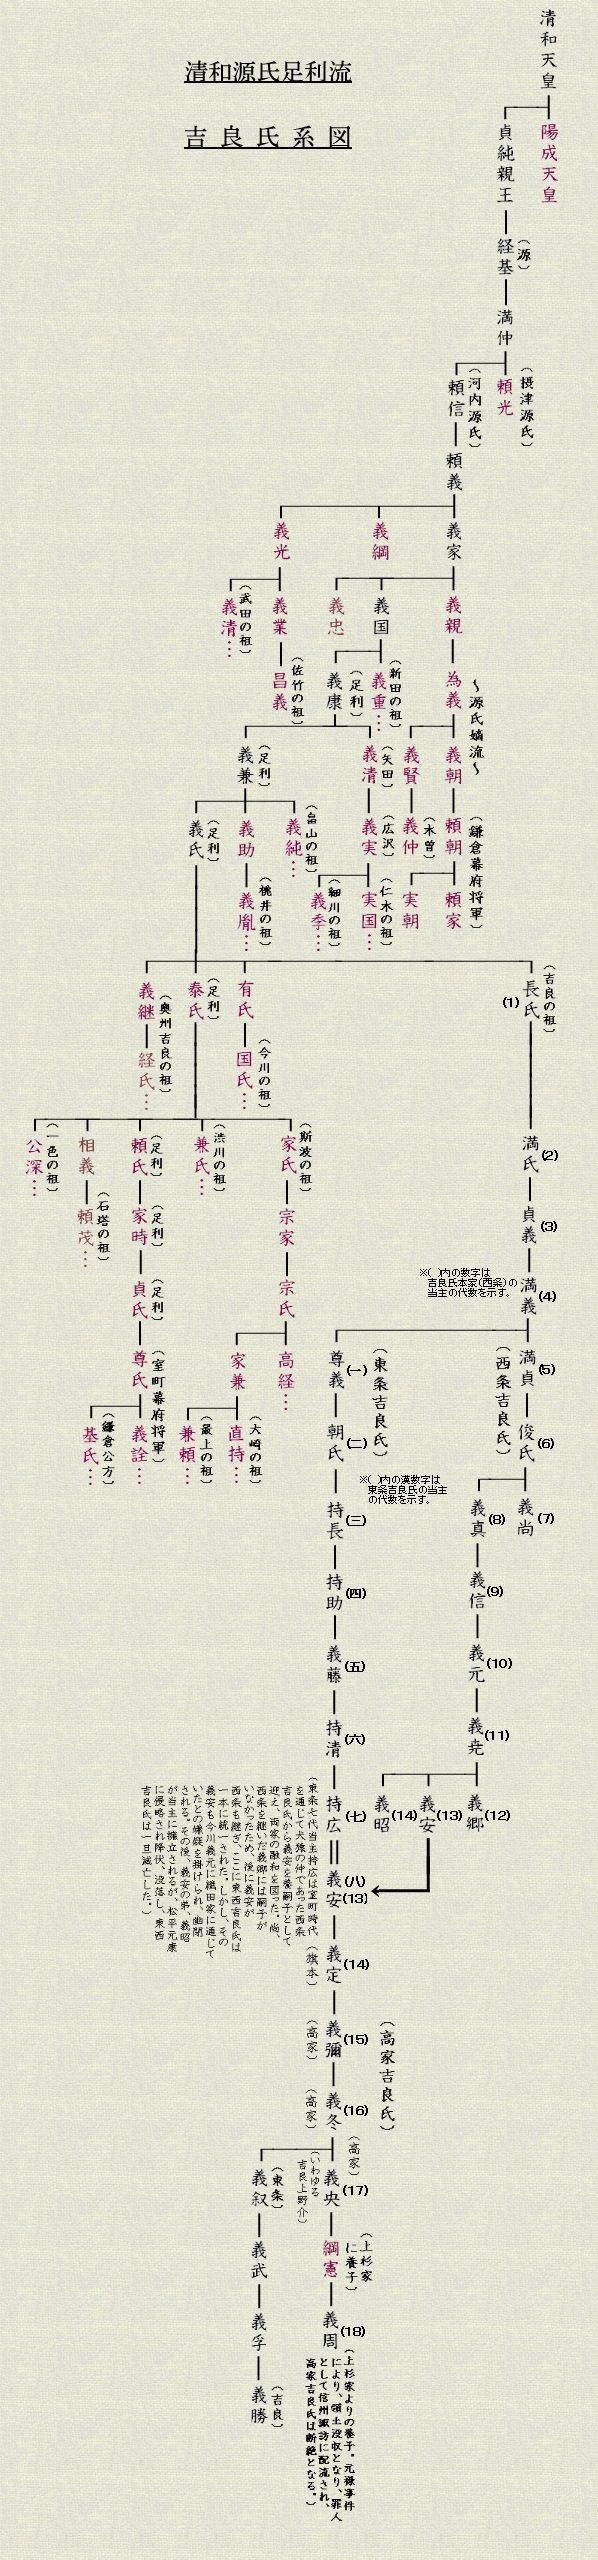 吉良氏家系図（清和源氏足利流） 日本秘境探訪